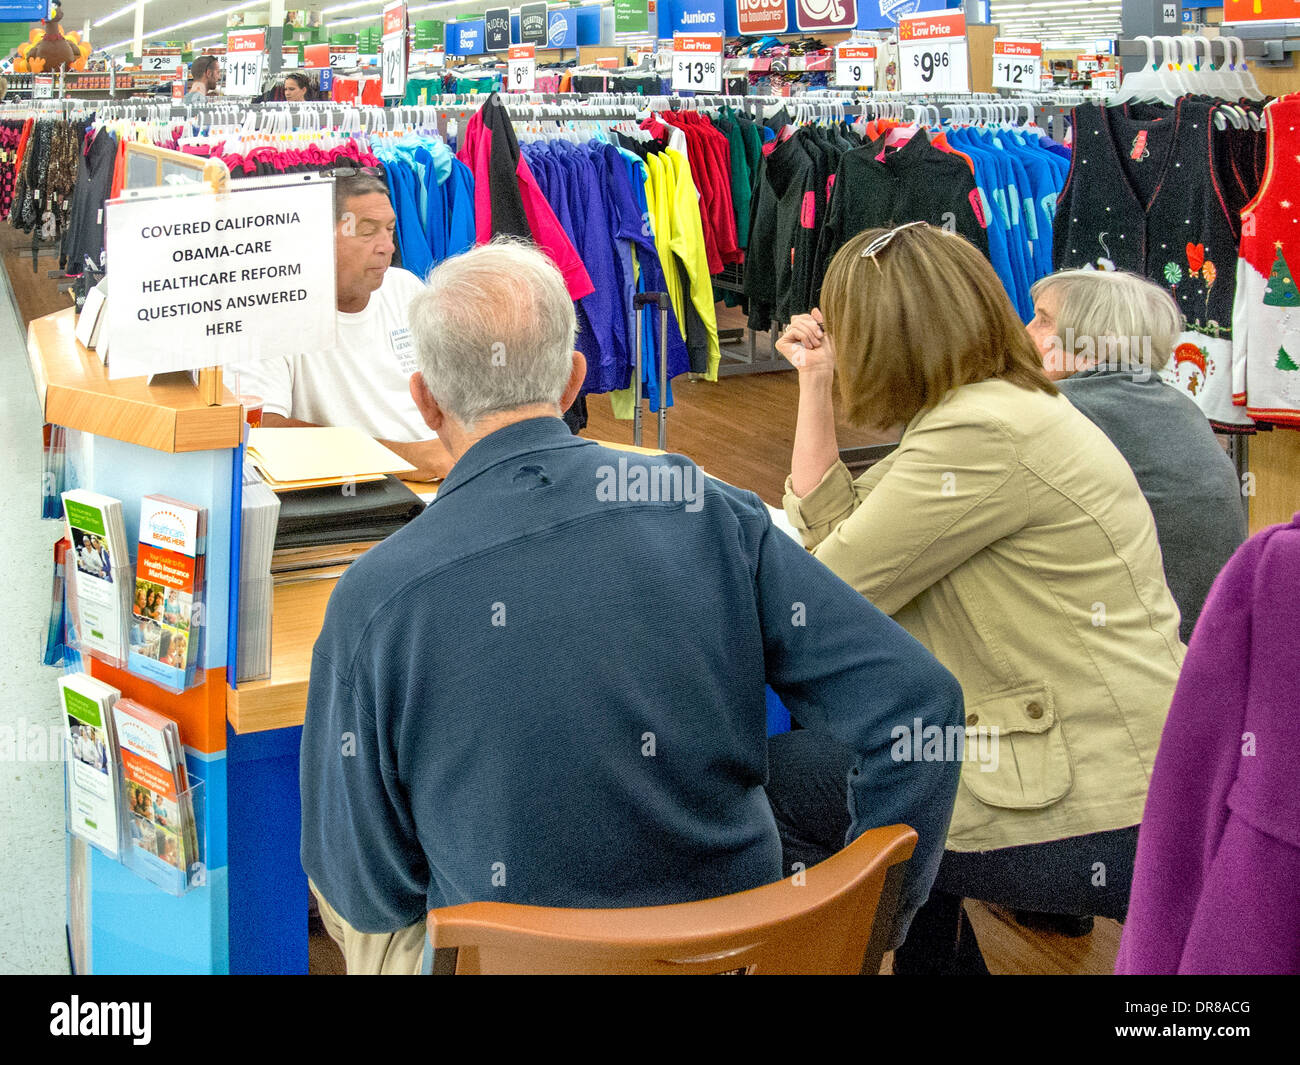 Un agente de seguros asesora a sus clientes en un quiosco de venta en una Laguna Niguel, CA, tienda de ropa de descuento ofreciendo cobertura en virtud de la Ley de salud asequible o Obamacare, conocida en el estado como cubiertas de California. Nota firmar y folletos. Foto de stock